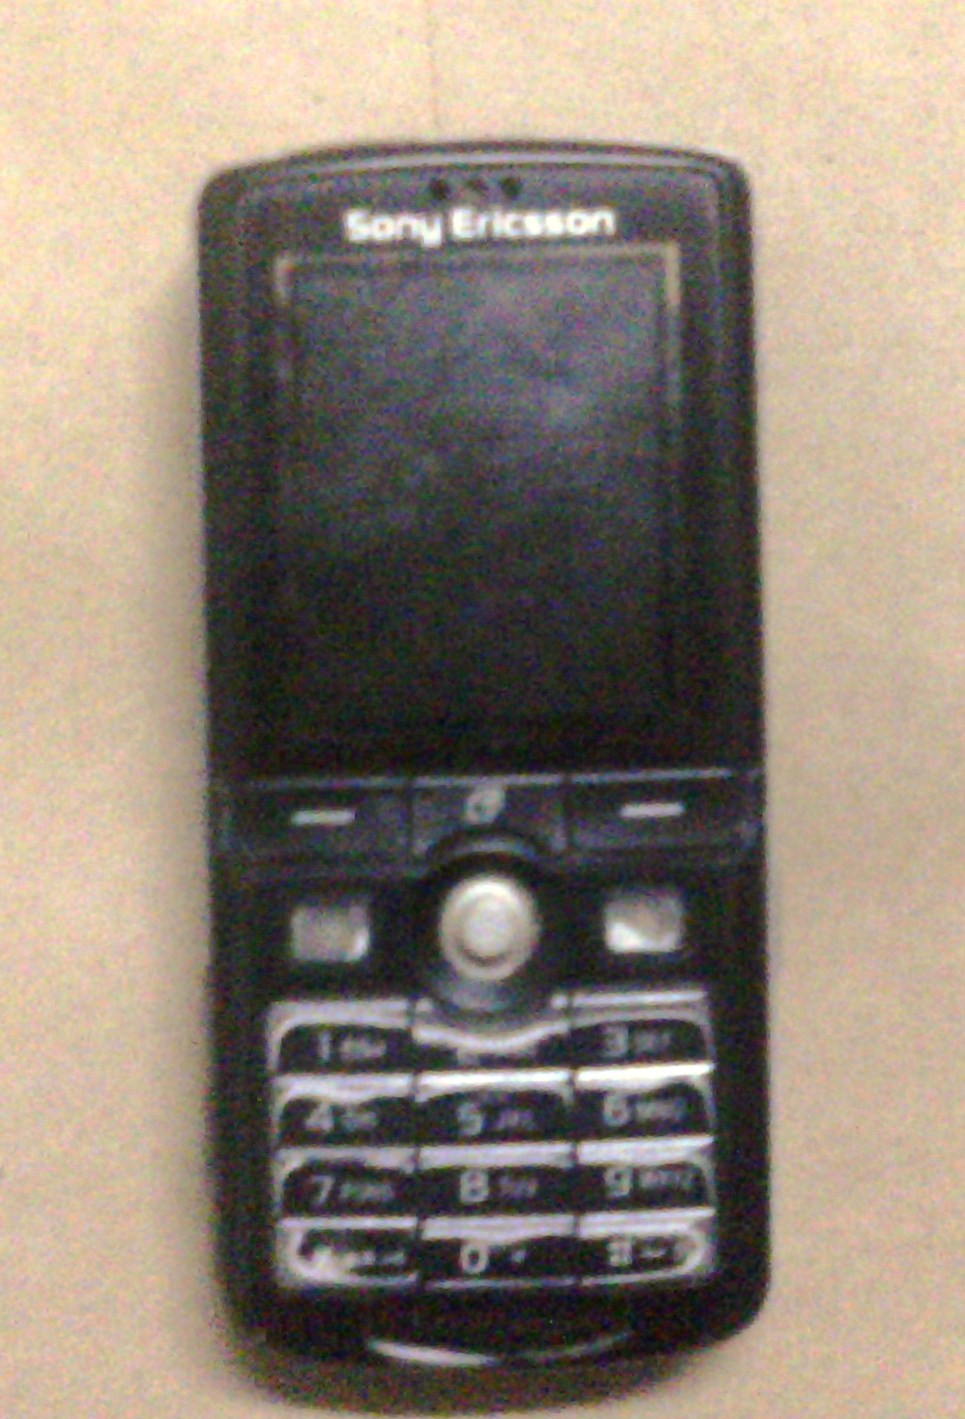 Sony Ericsson K750i large image 0